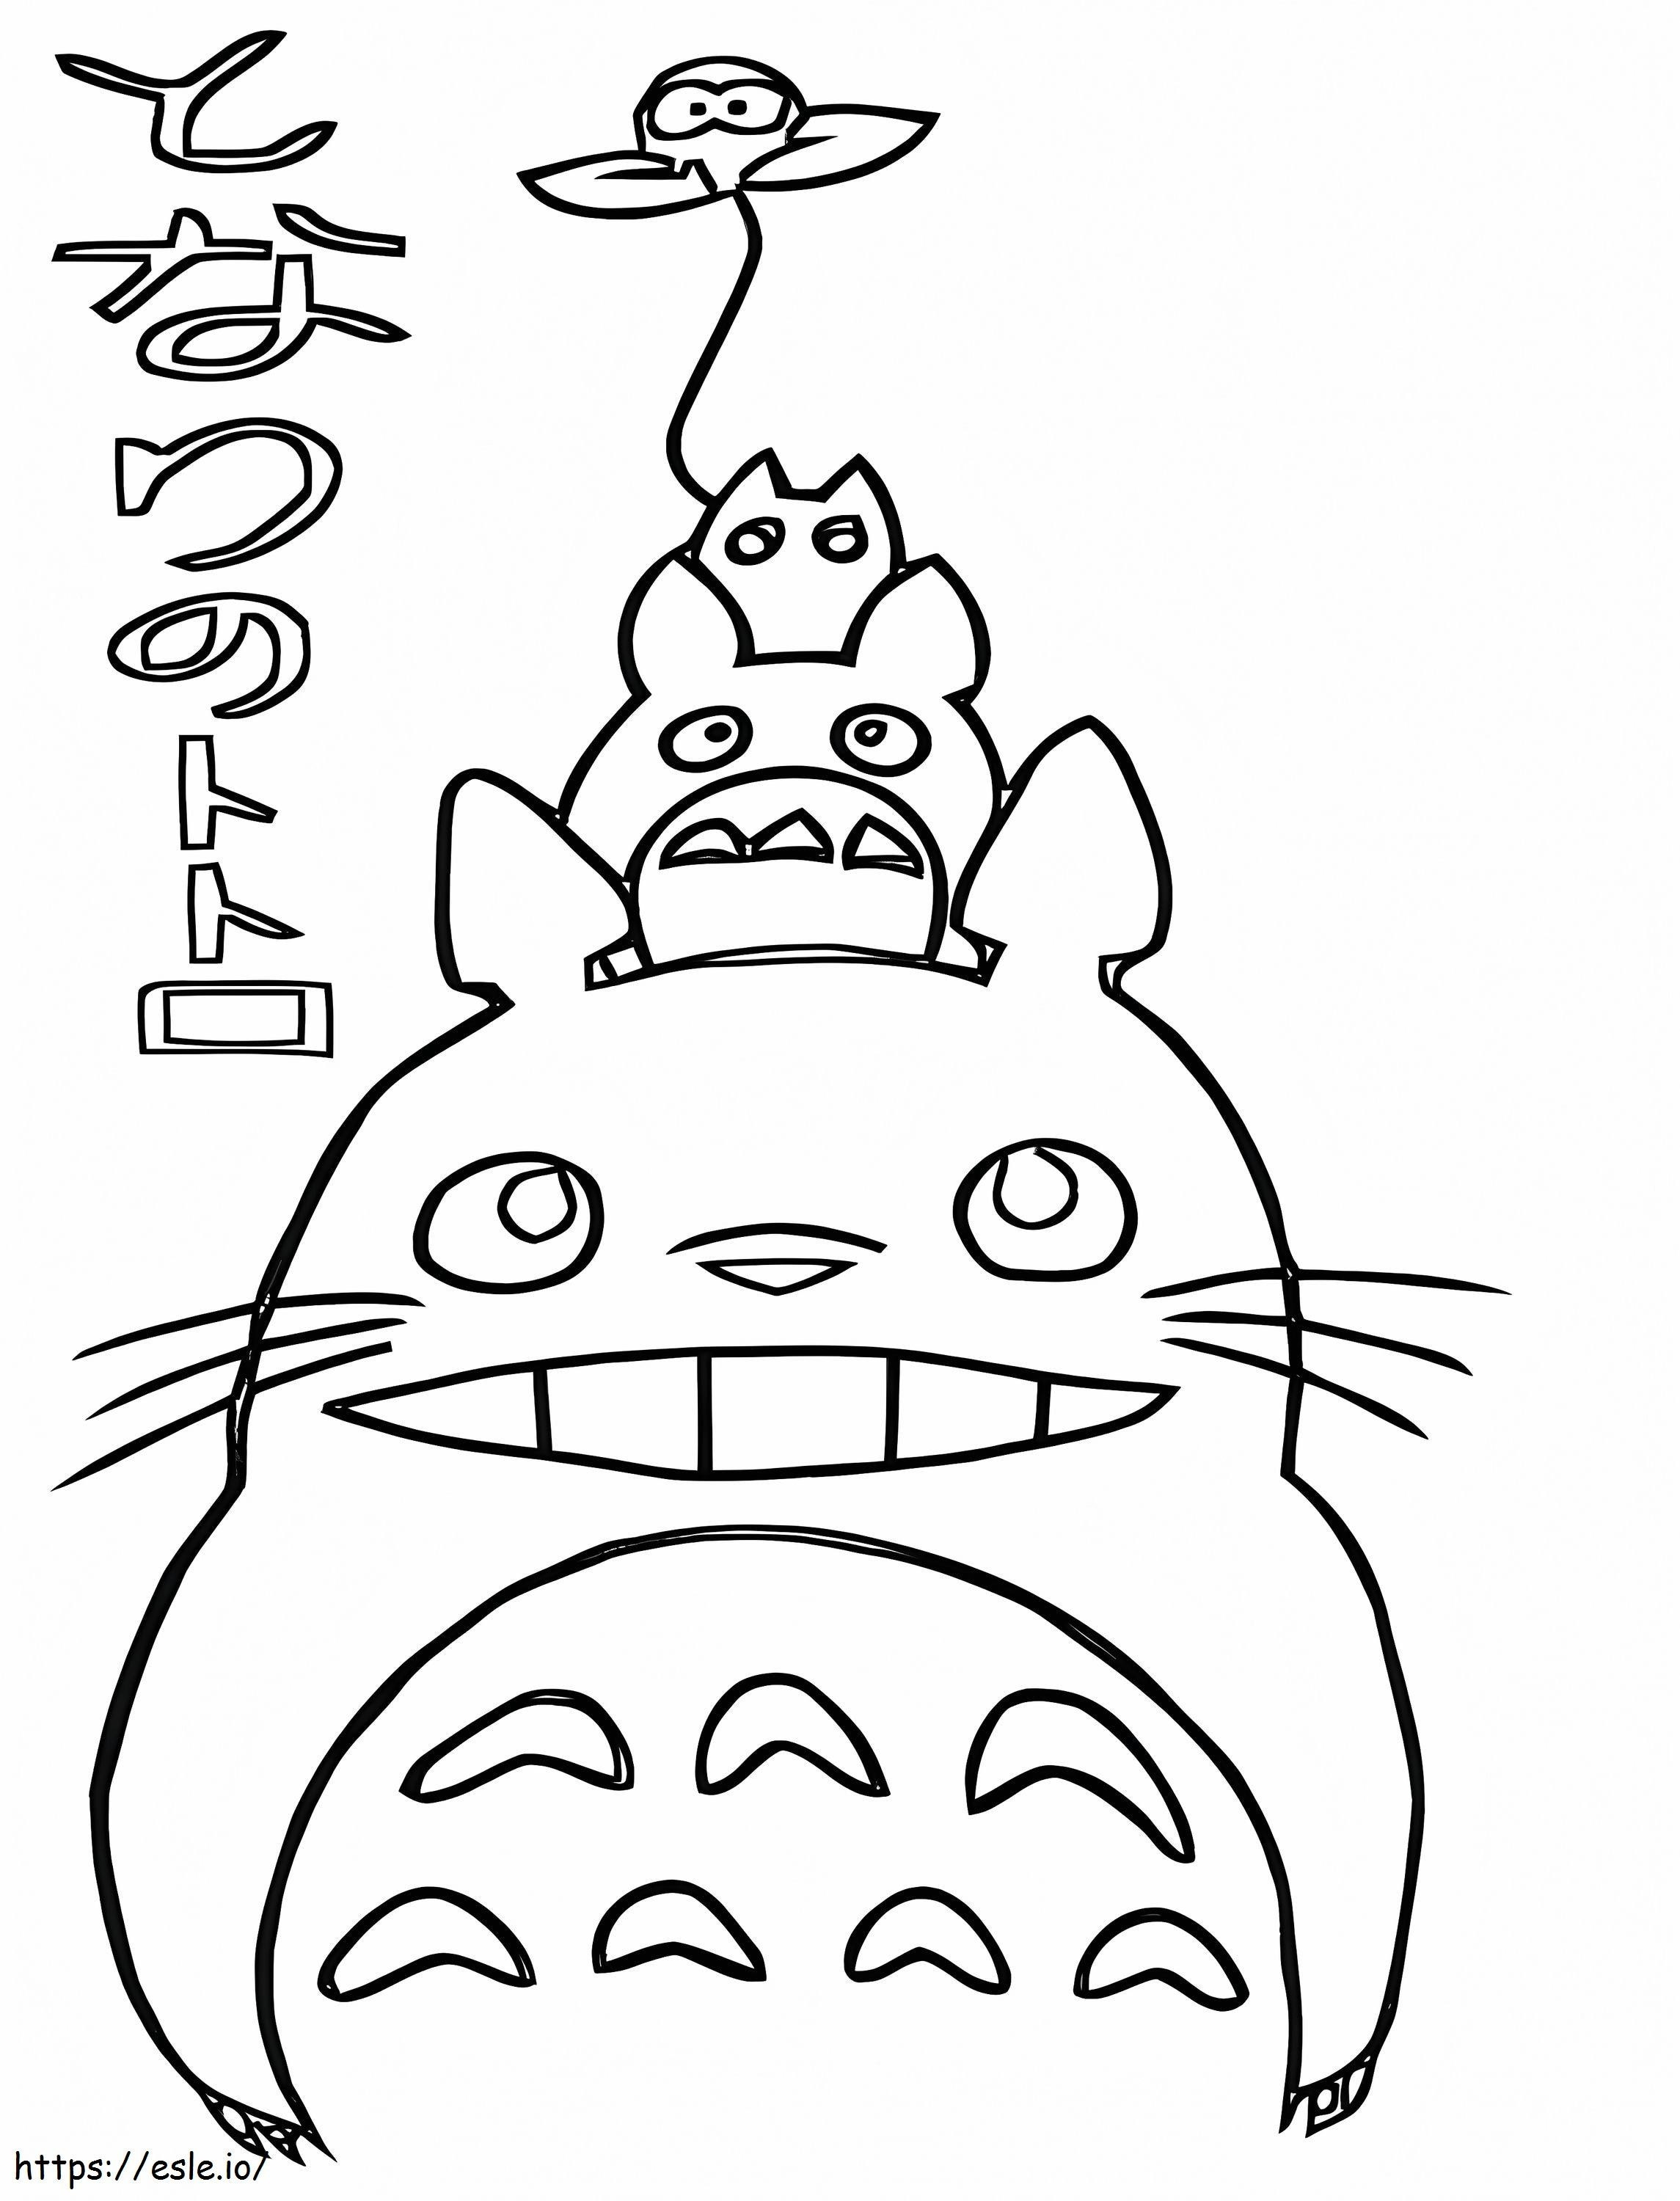 Totoro prietenos 5 de colorat